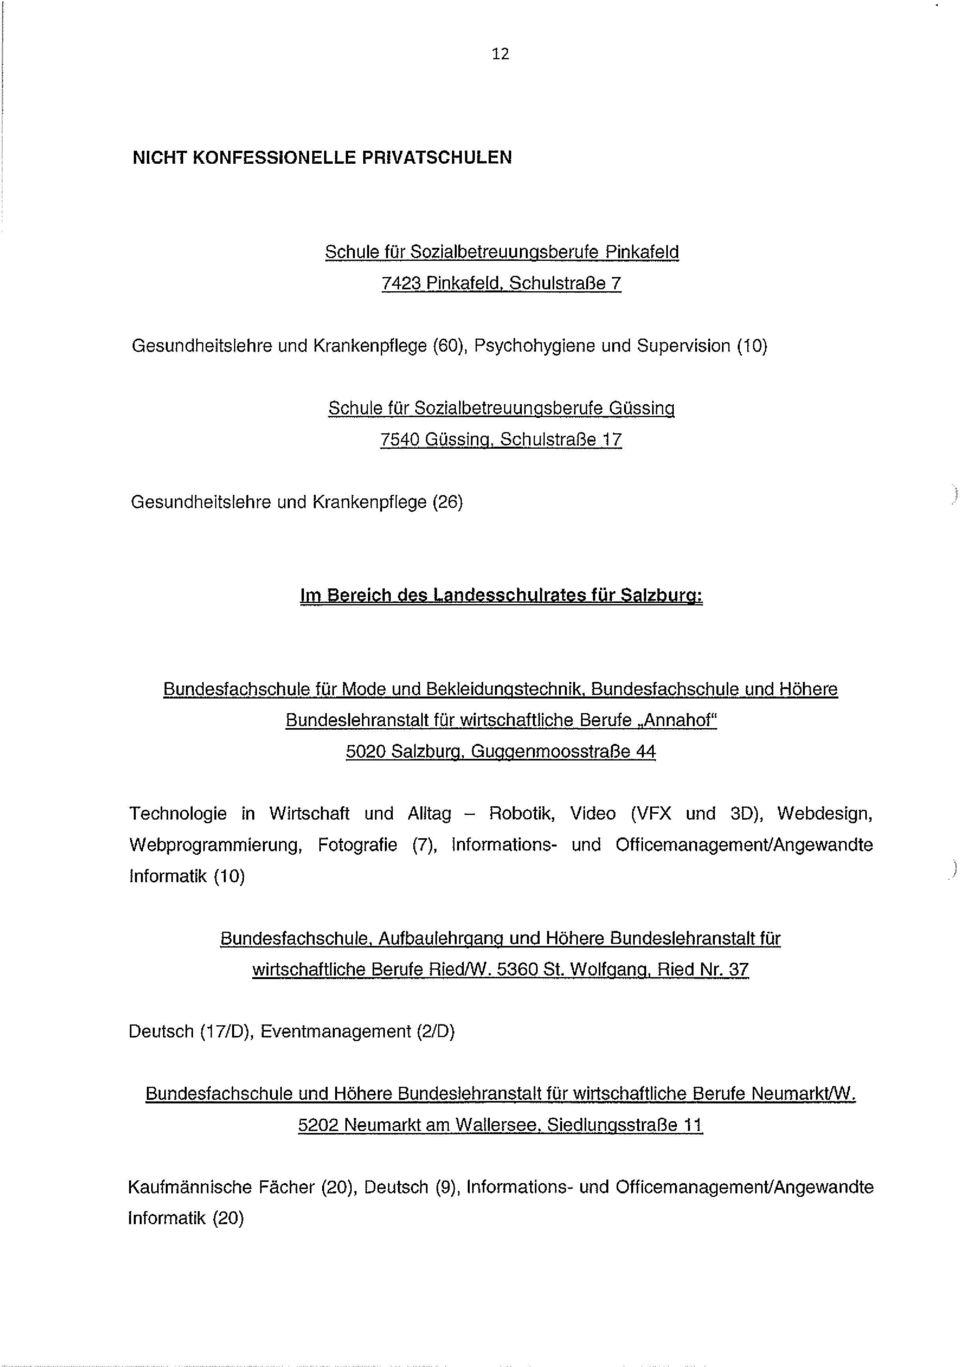 (26) Im Bereich des Landesschulrates für Salzburg: Bundesfachschule für Mode und Bekleidungstechnik. Bundestachschule und Höhere Bundeslehranstalt für wirtschaftliche Berufe ~Annahof 5020 Salzburg.